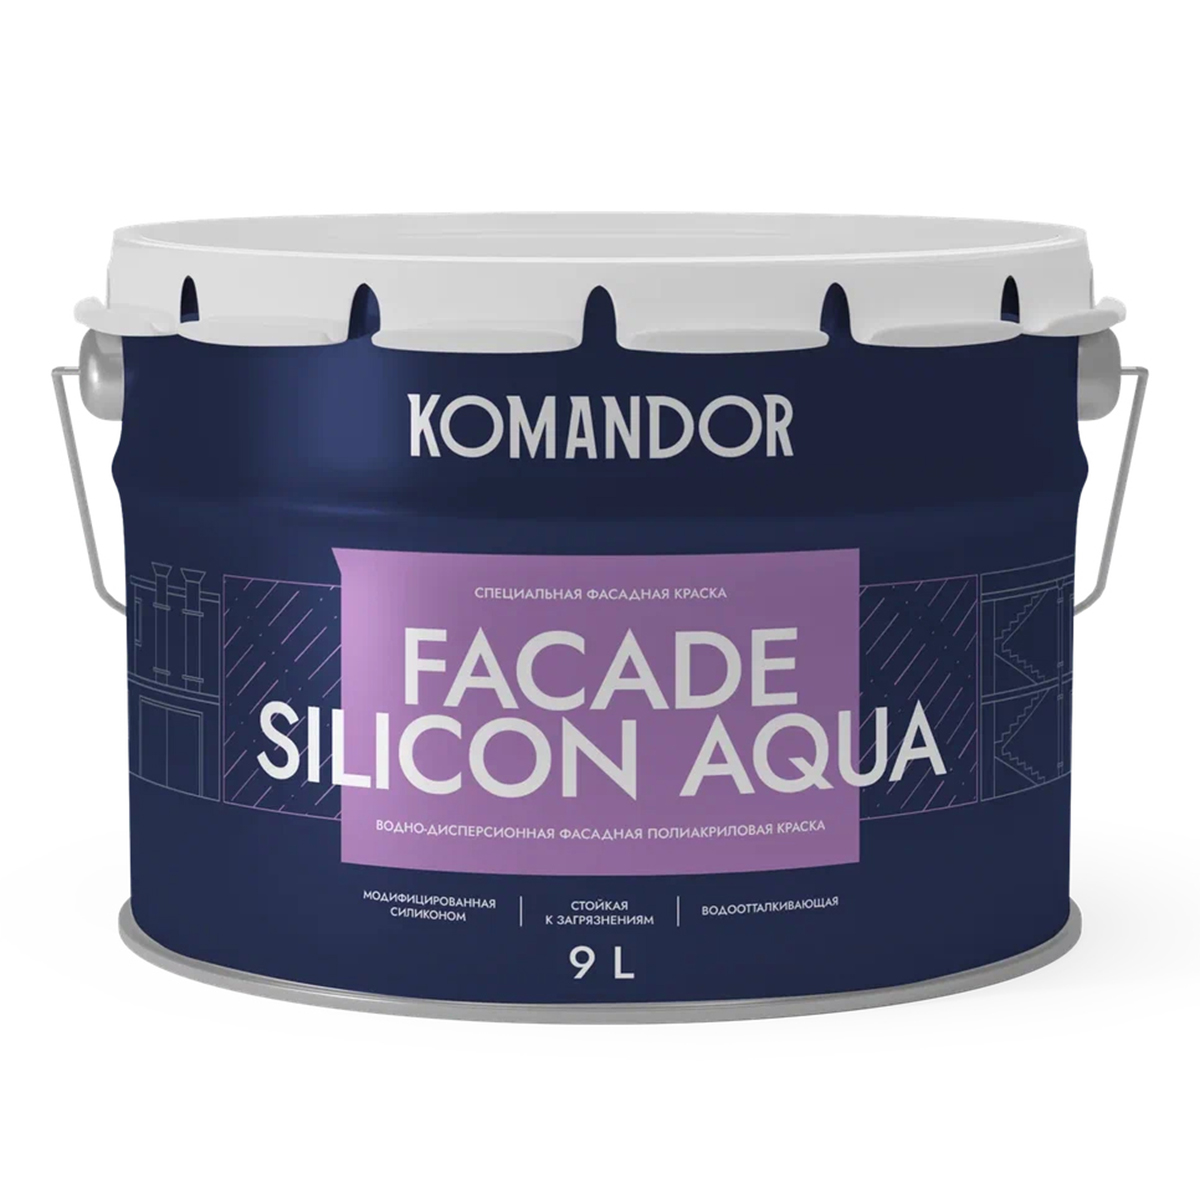 Краска фасадная Komandor Facade Silicon Aqua, глубокоматовая, база С, бесцветный, 9 л краска в э фасадная symphony aqua lap 9л